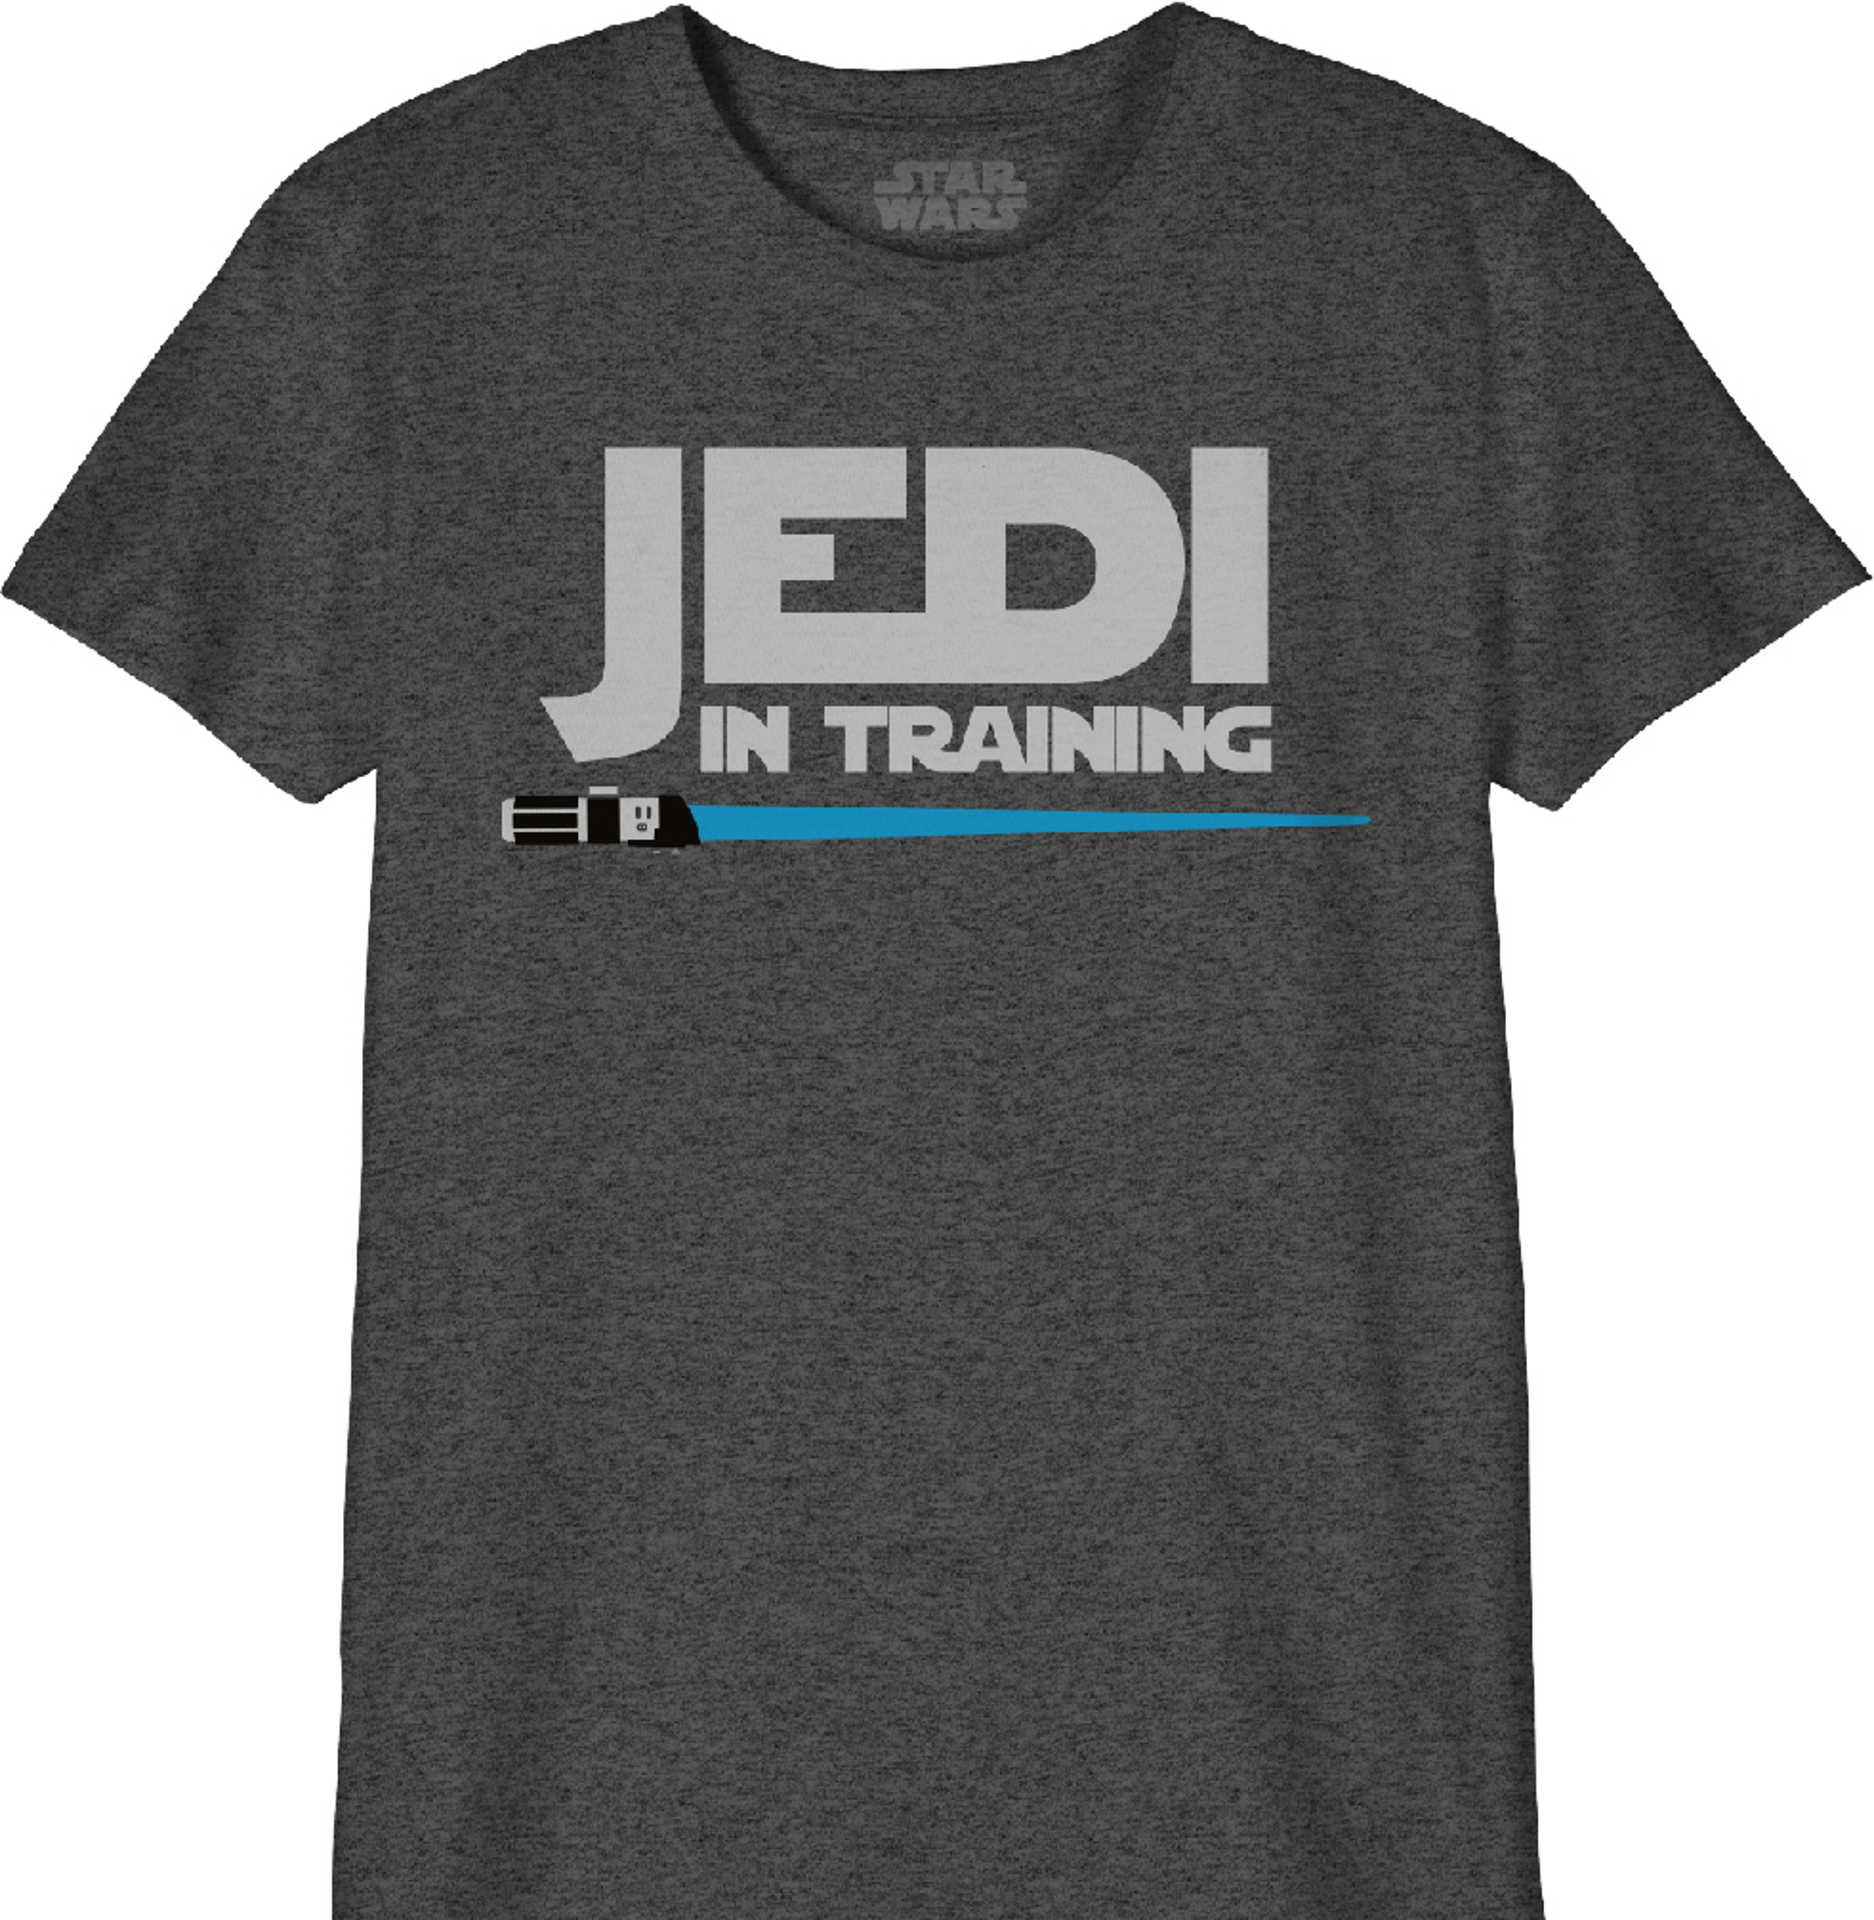 Star Wars - T-Shirt Noir Enfant Jedi en formation - 10 ans